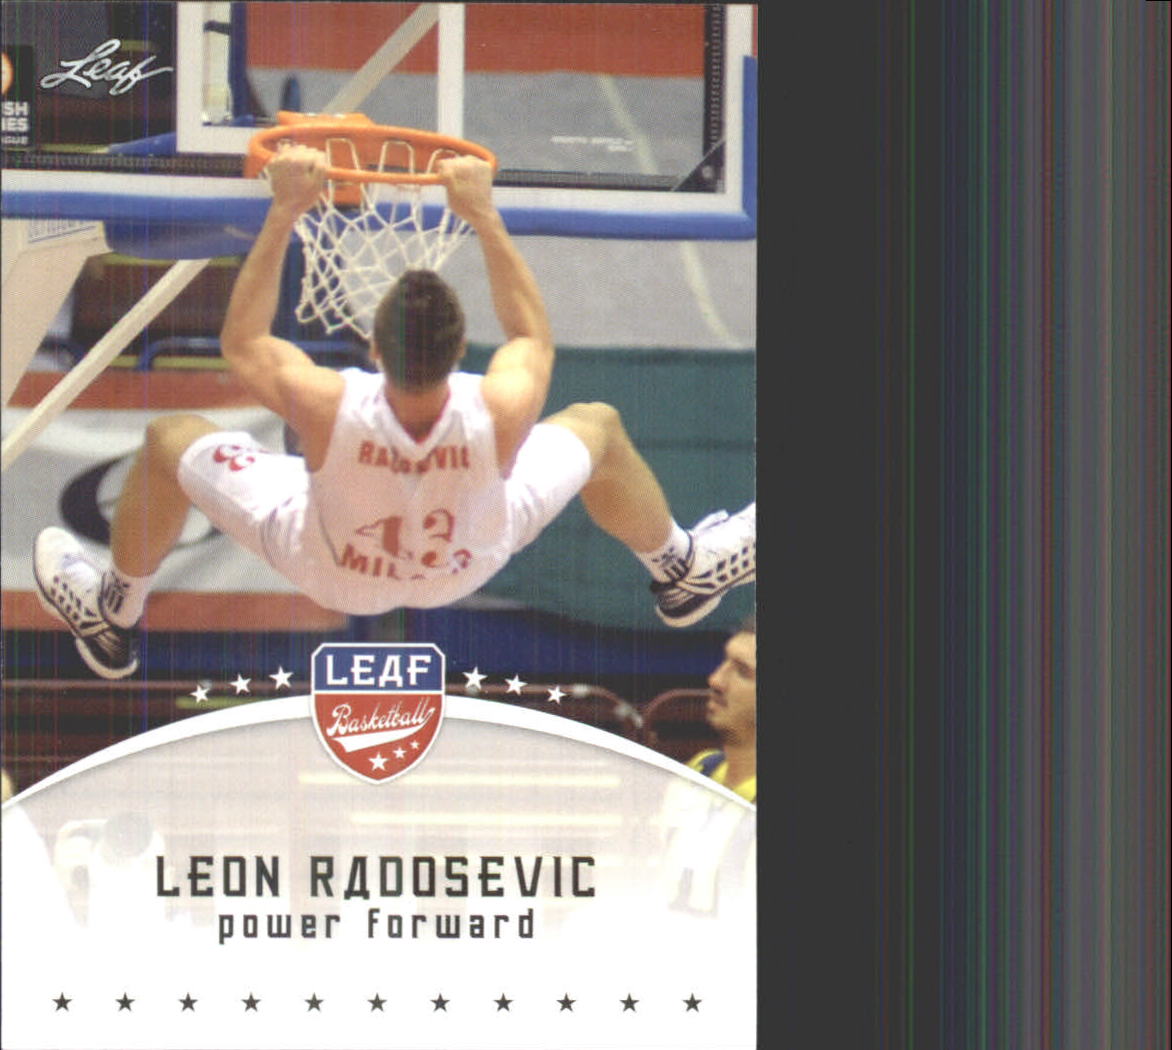  Leon Radosevic player image